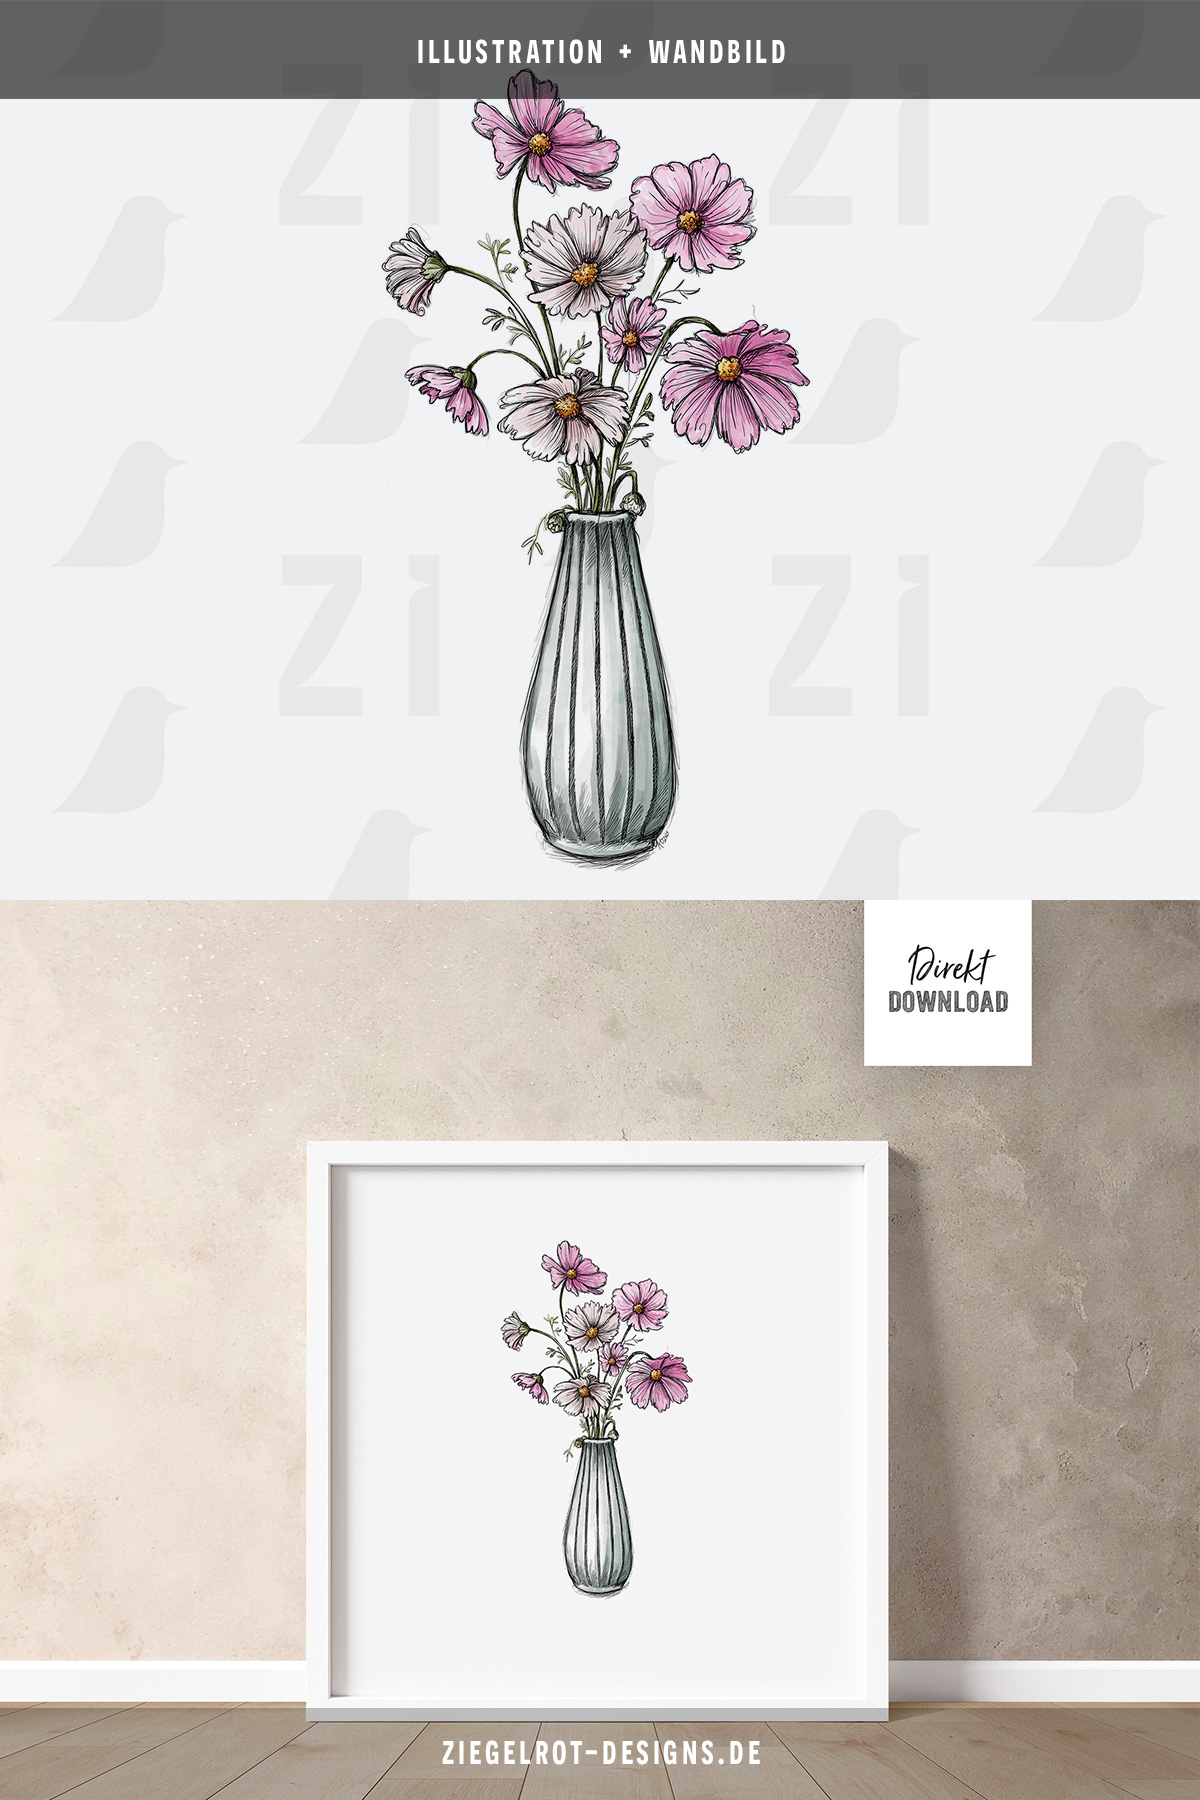 Motiv für wandbild mit Illustration von Blumenvase mit Cosmea